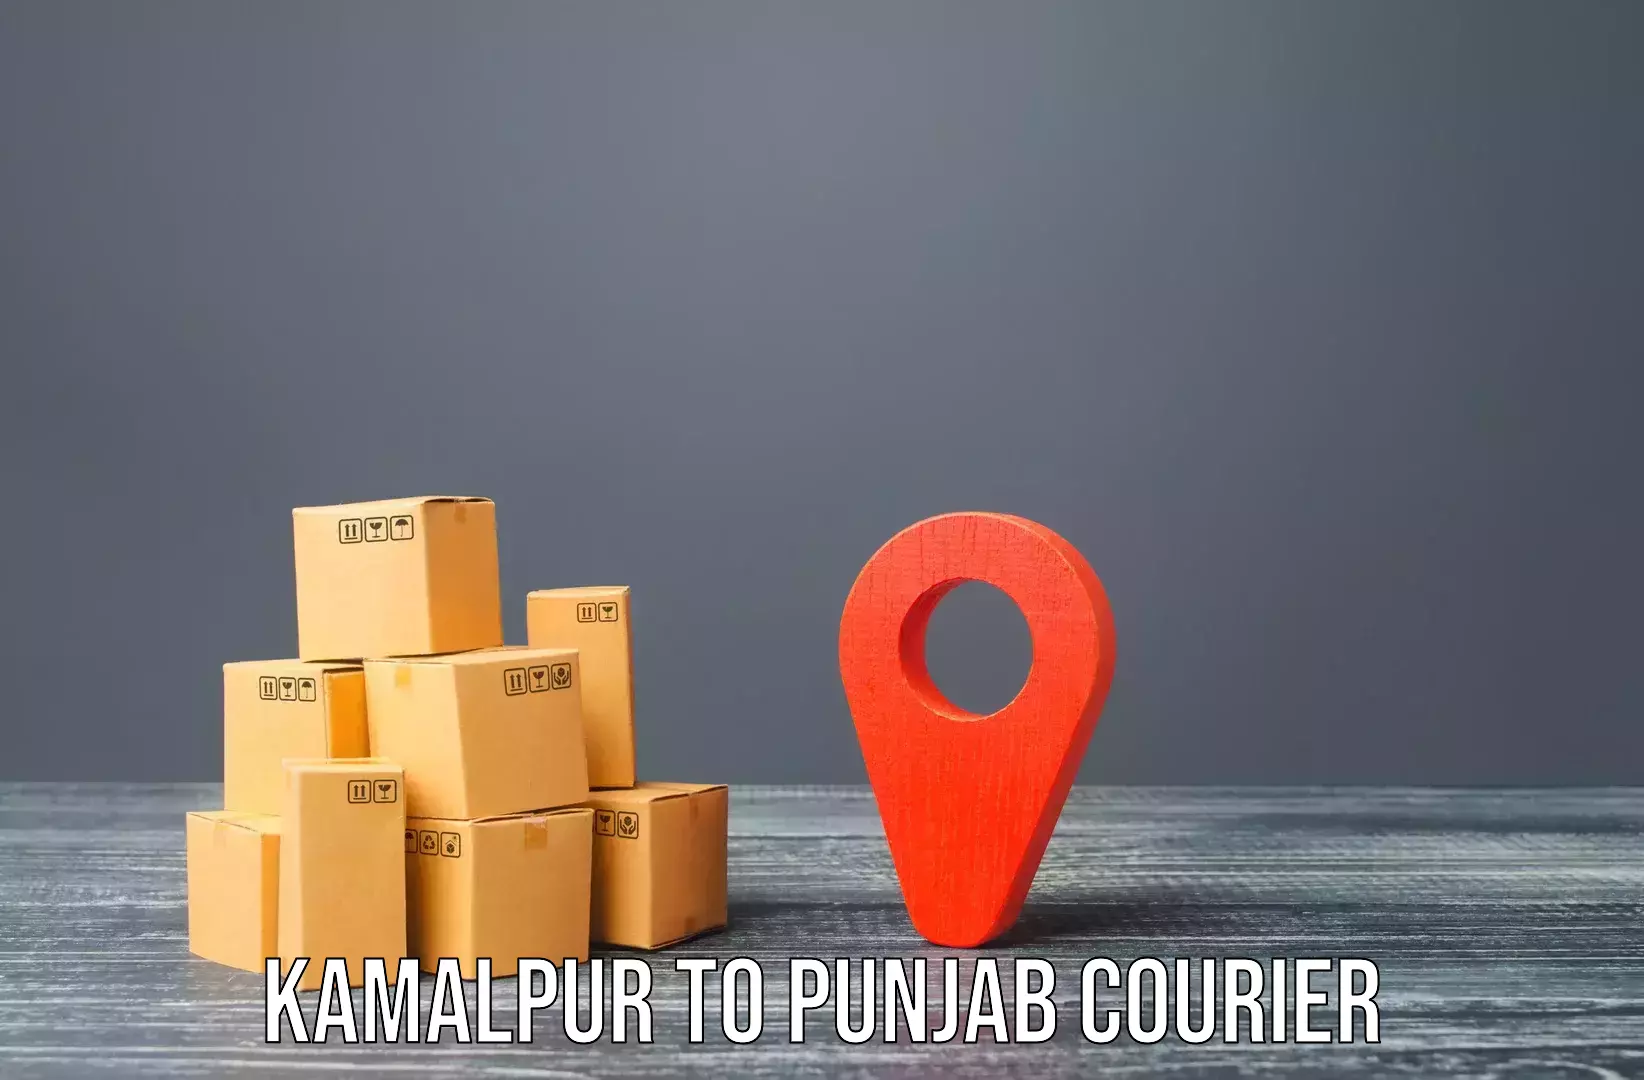 Affordable household movers Kamalpur to Punjab